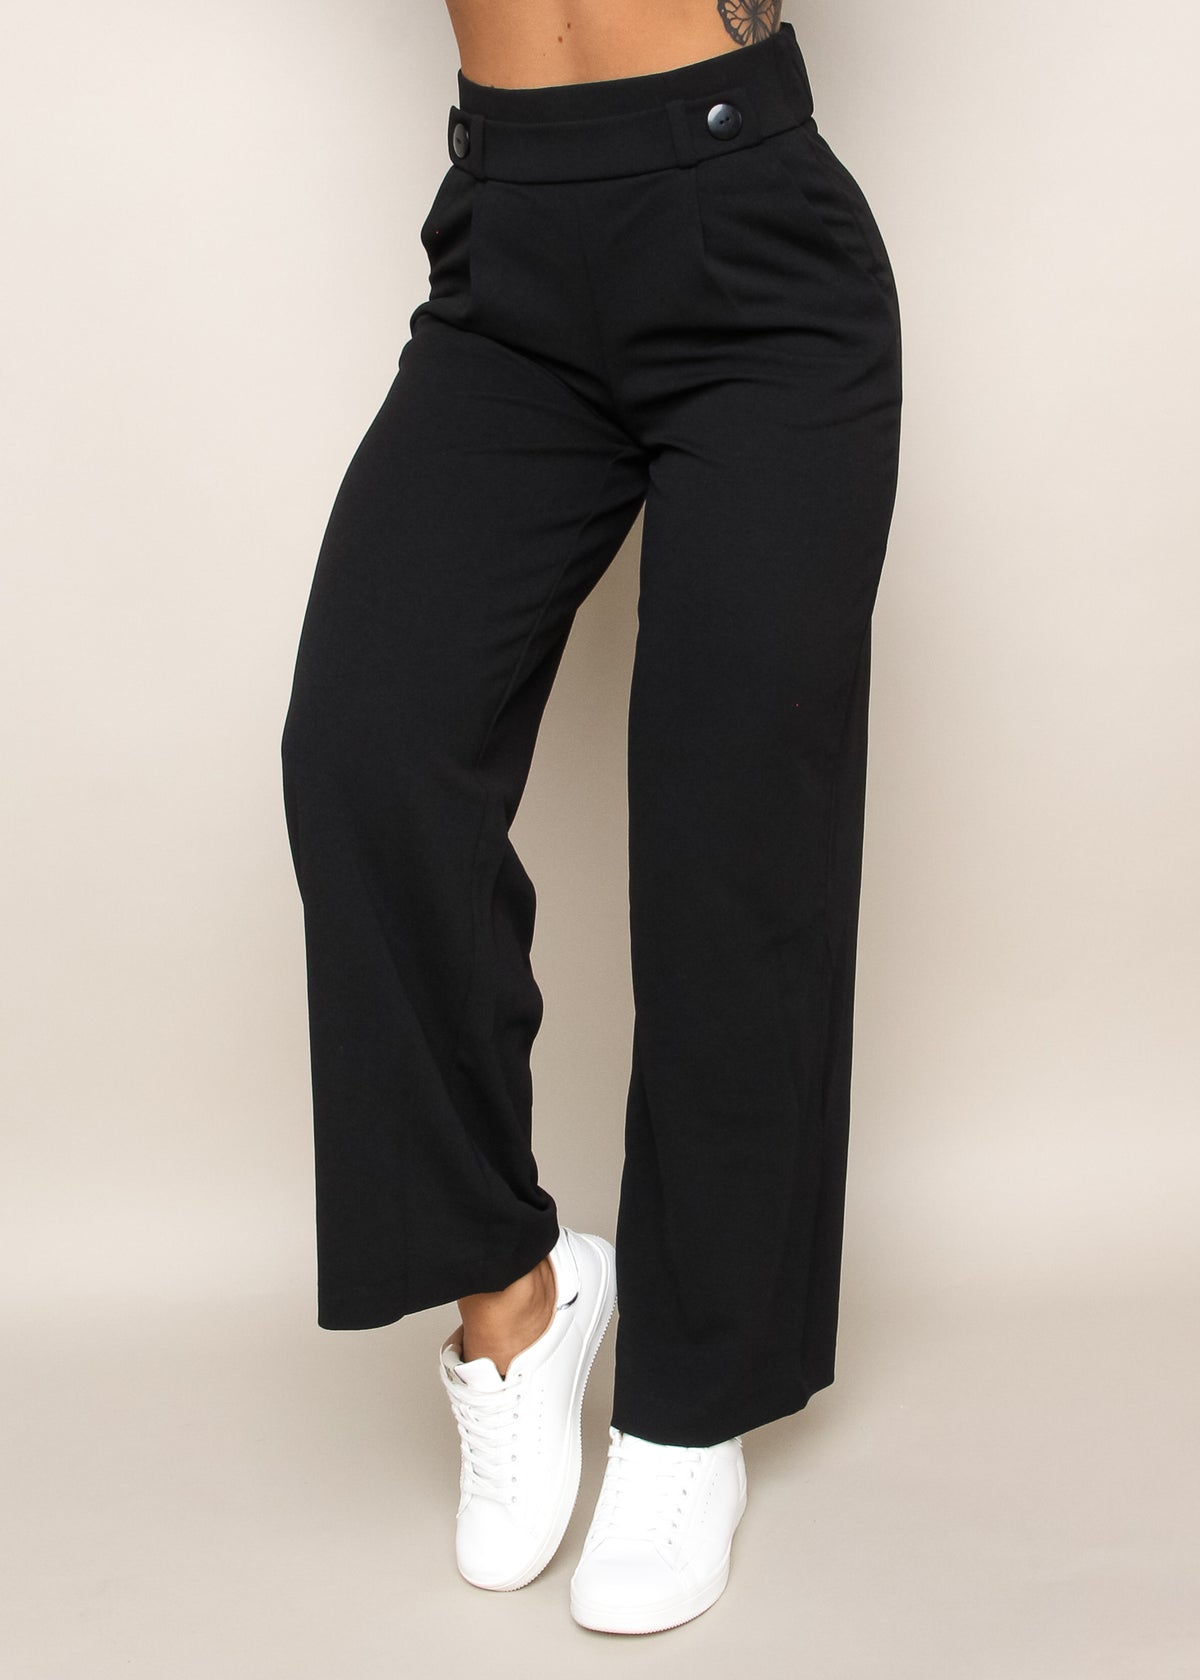 Bukser Damer | Køb til kvinder online - DiModa